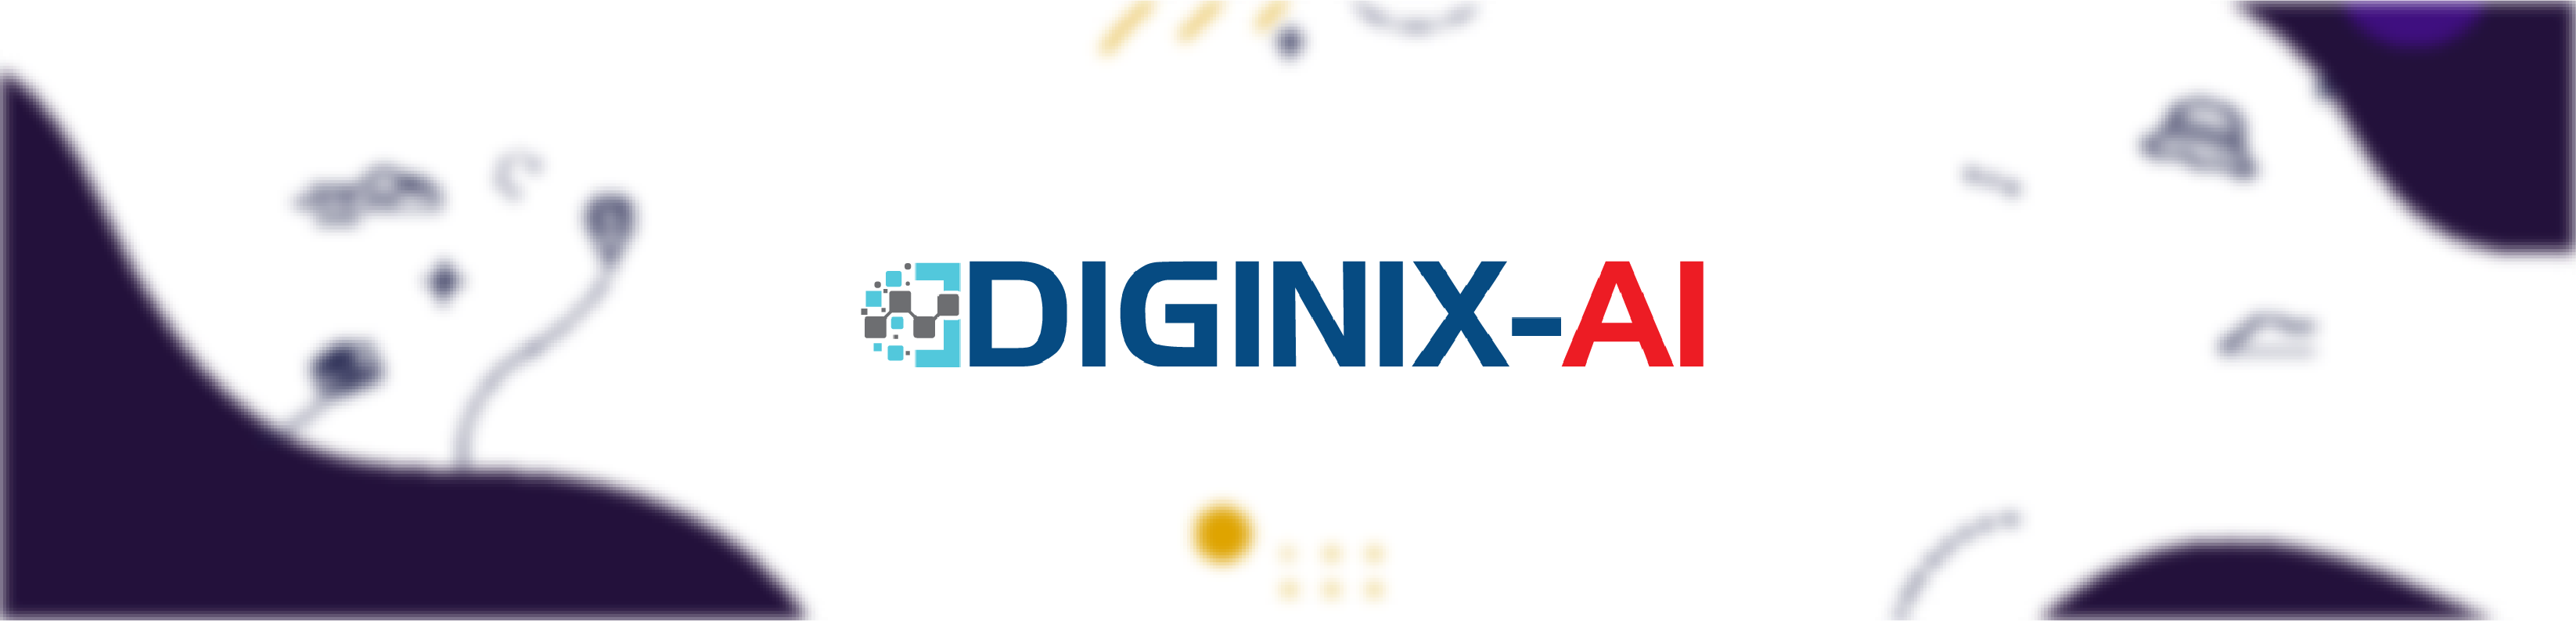 Diginix-AI